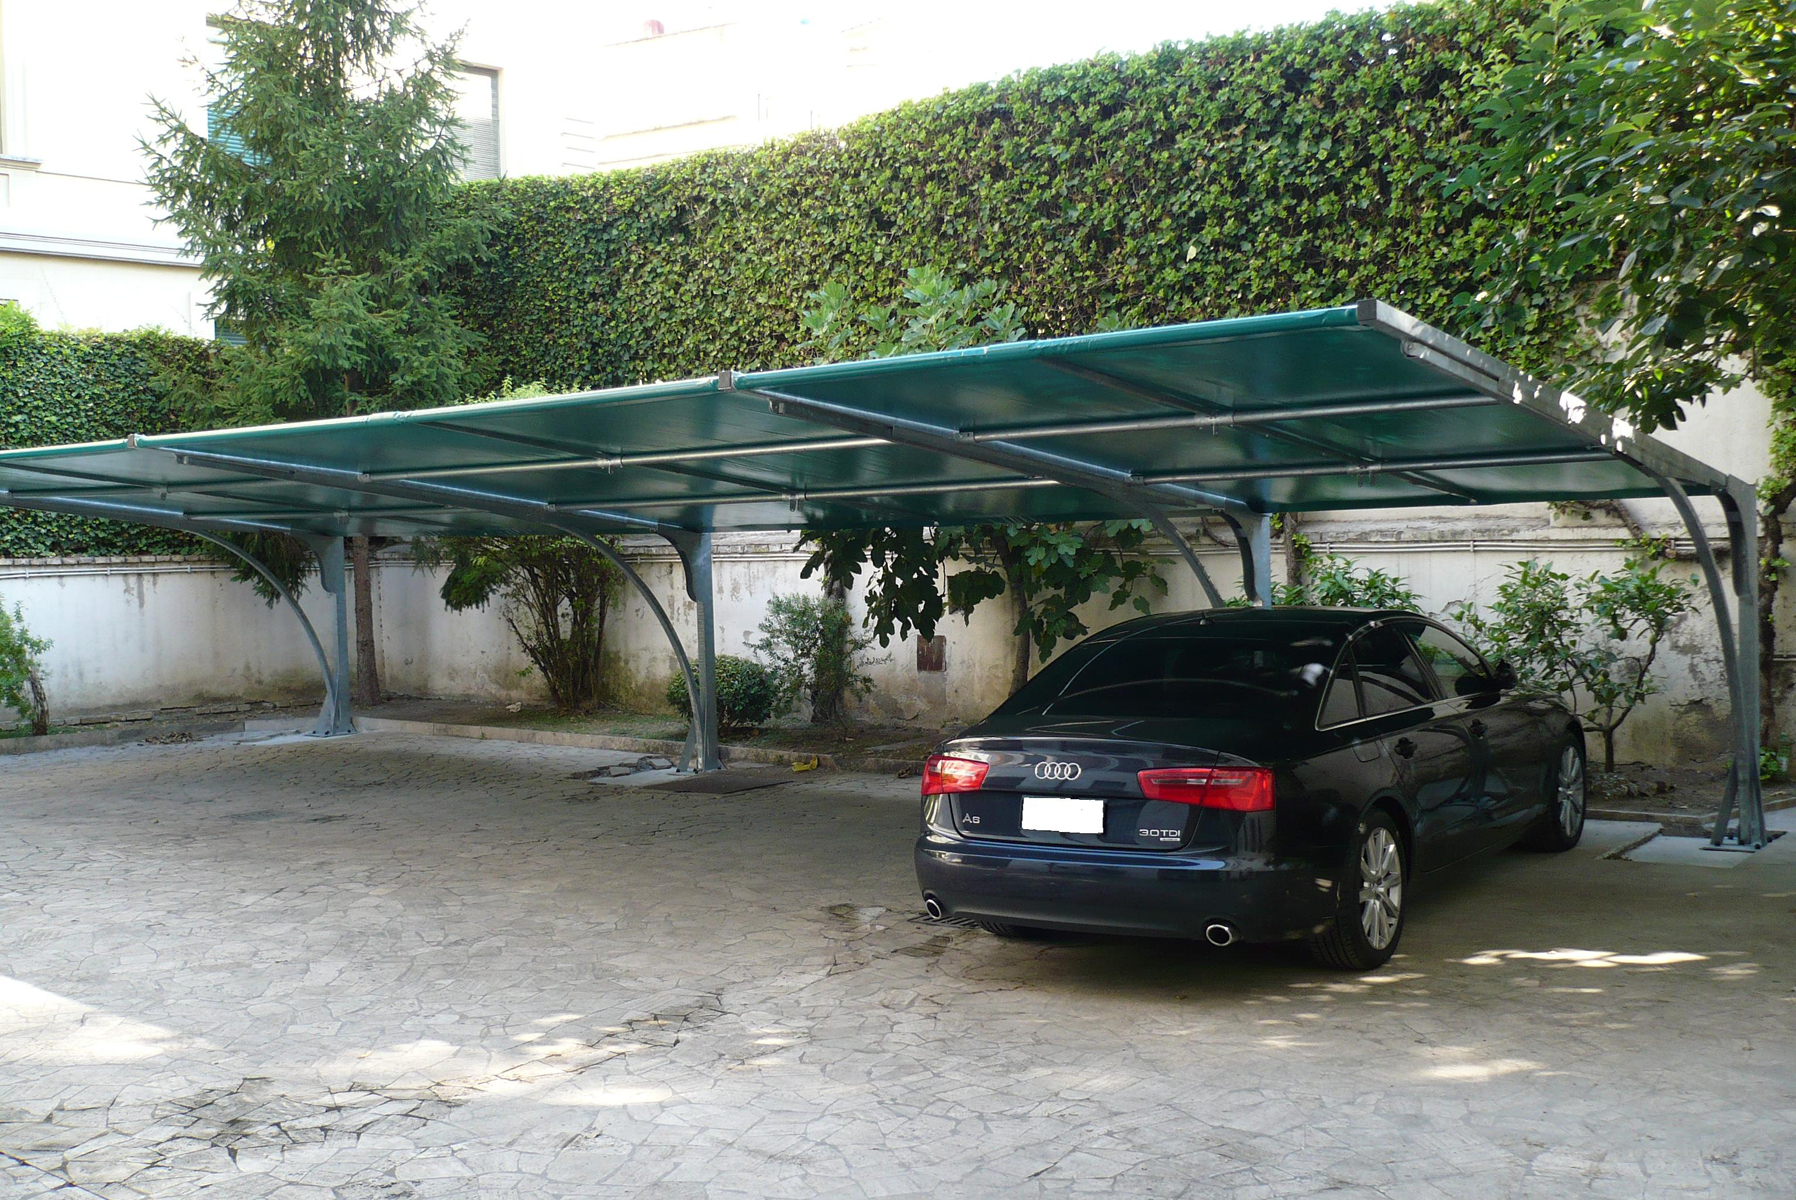 Sistemi di copertura per auto, parcheggi ombreggianti antigrandine